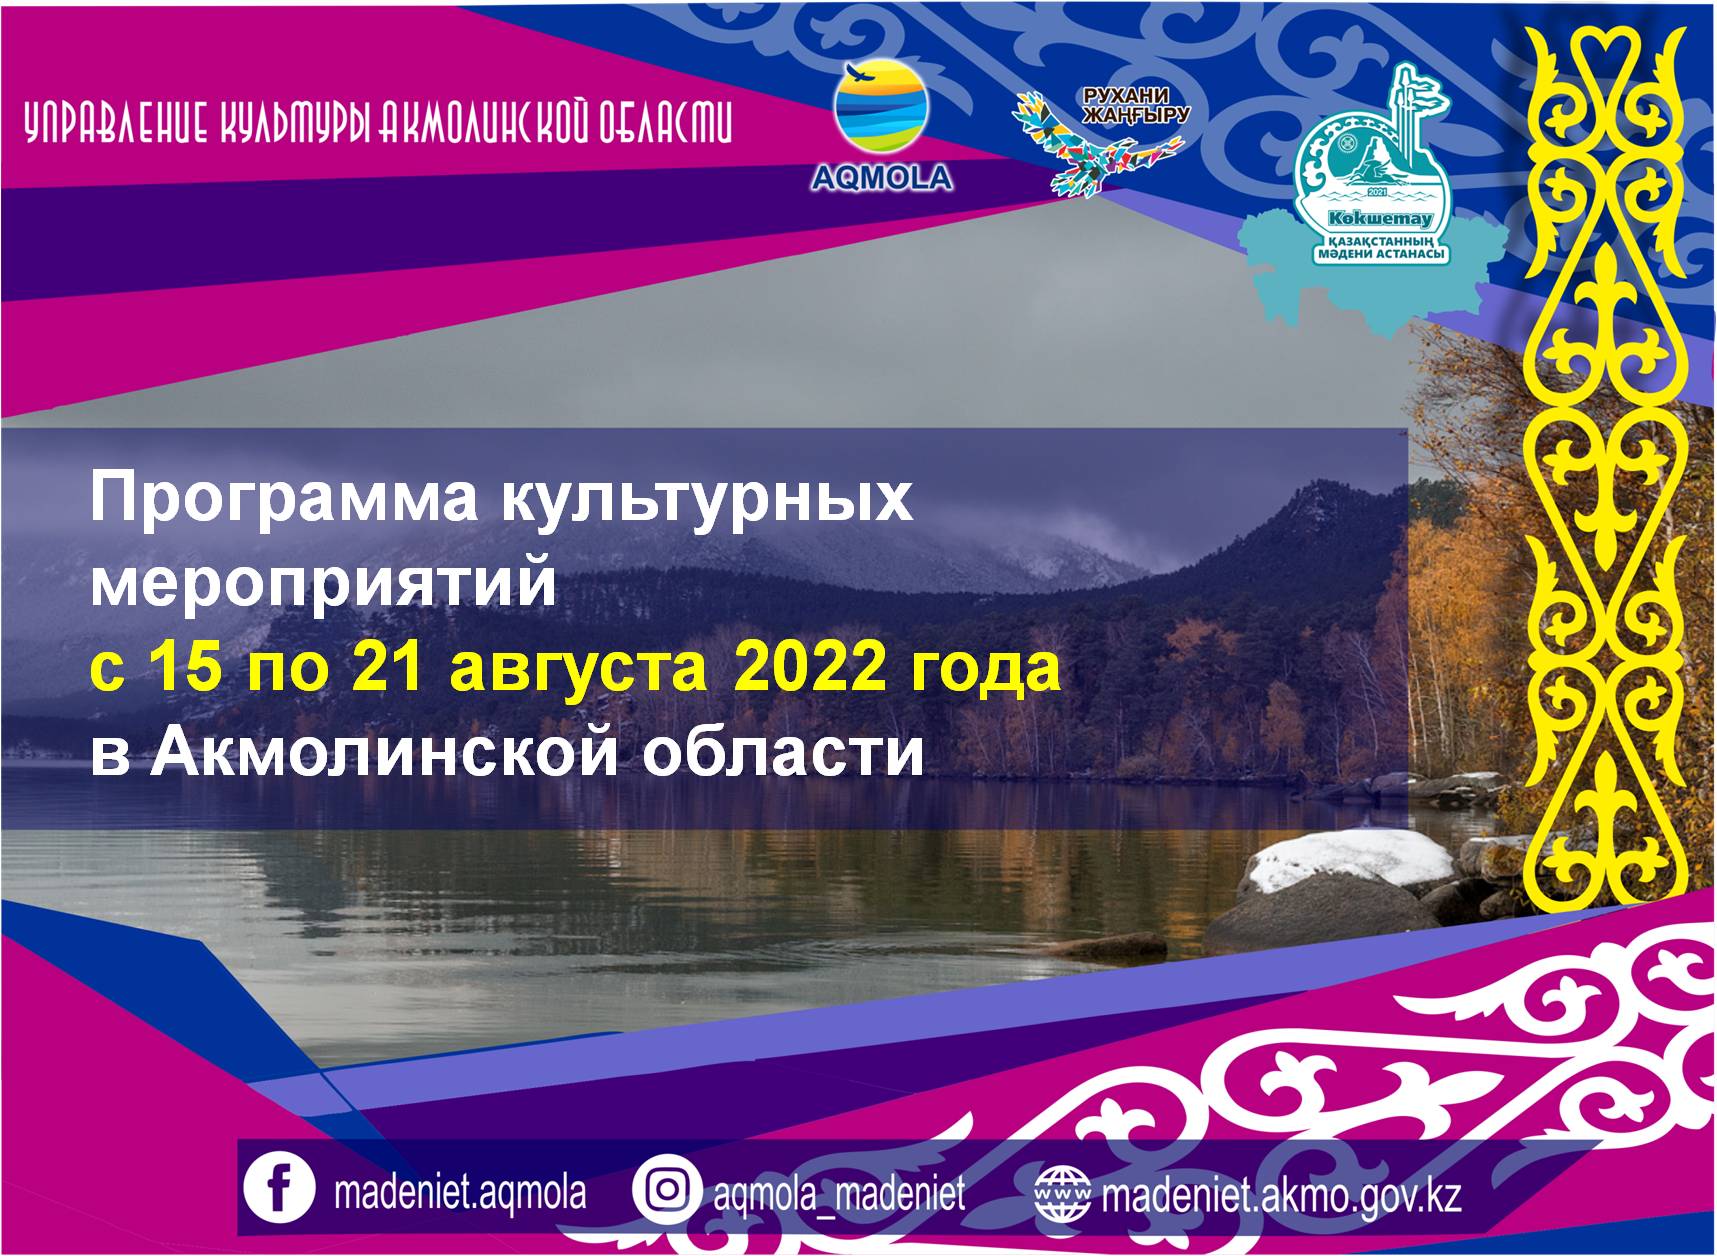 Программа культурных мероприятий с 15 по 21 августа 2022 года в Акмолинской области